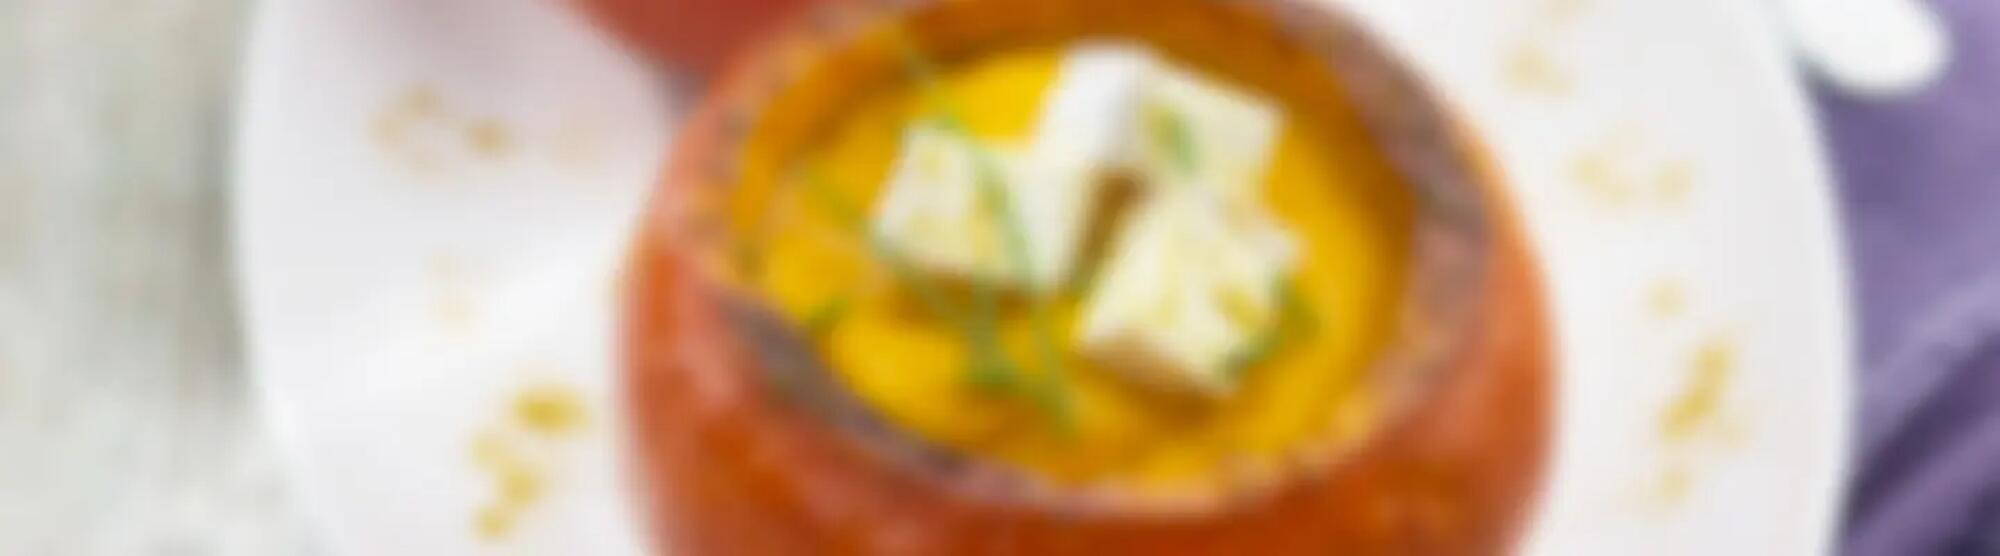 Recette : Velouté de potimarron au curry et fromage